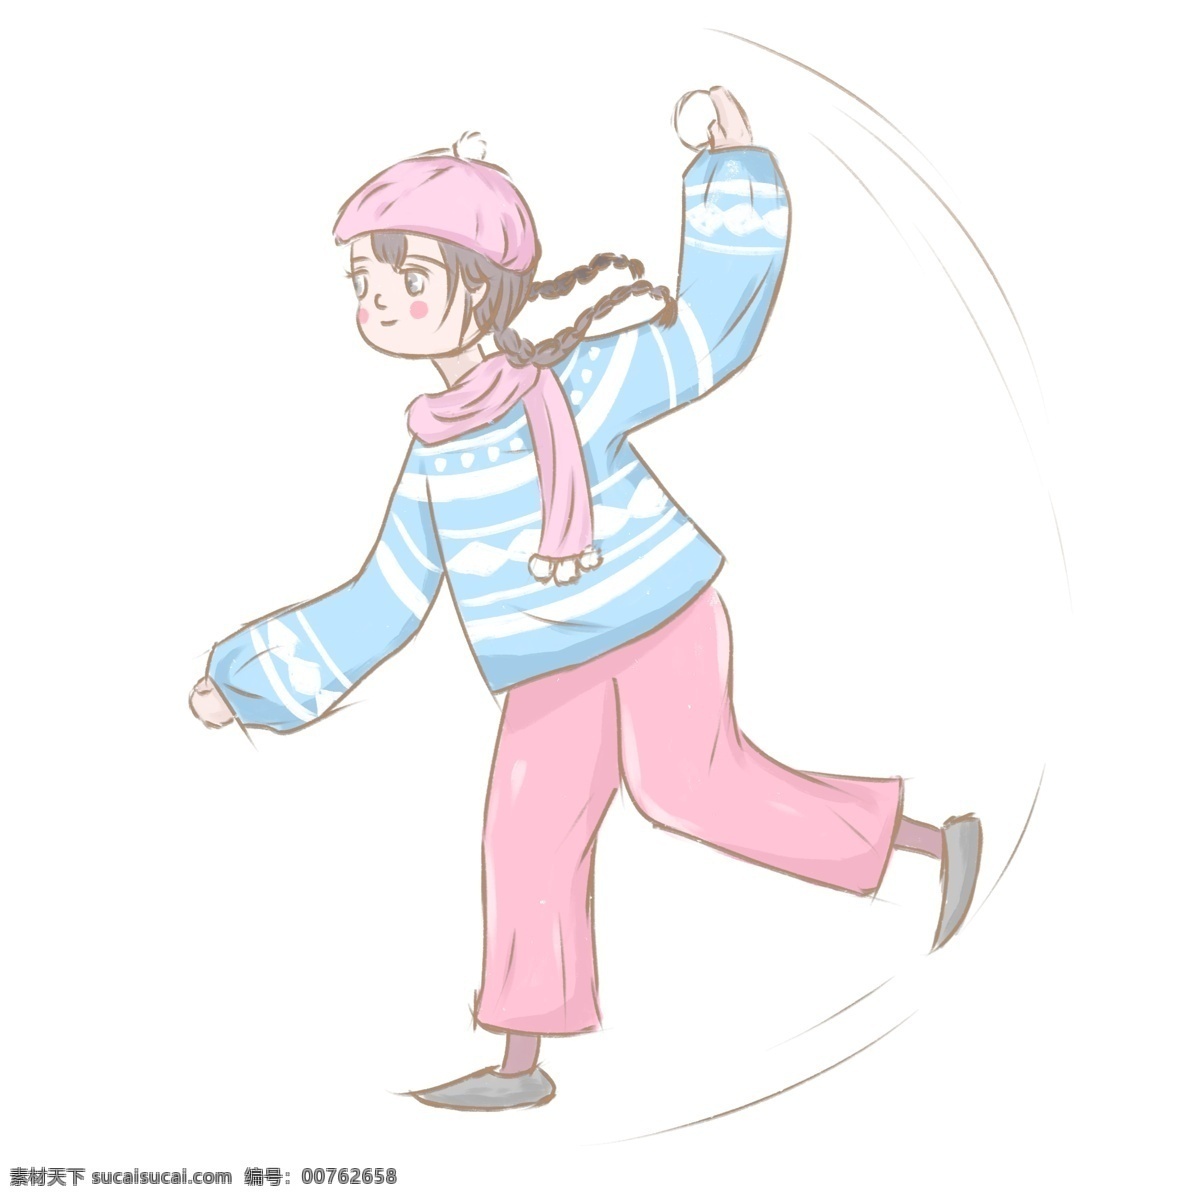 冬季 玩 雪球 女孩 商用 元素 清新 冬天 人物设计 网雪球 儿童 插画